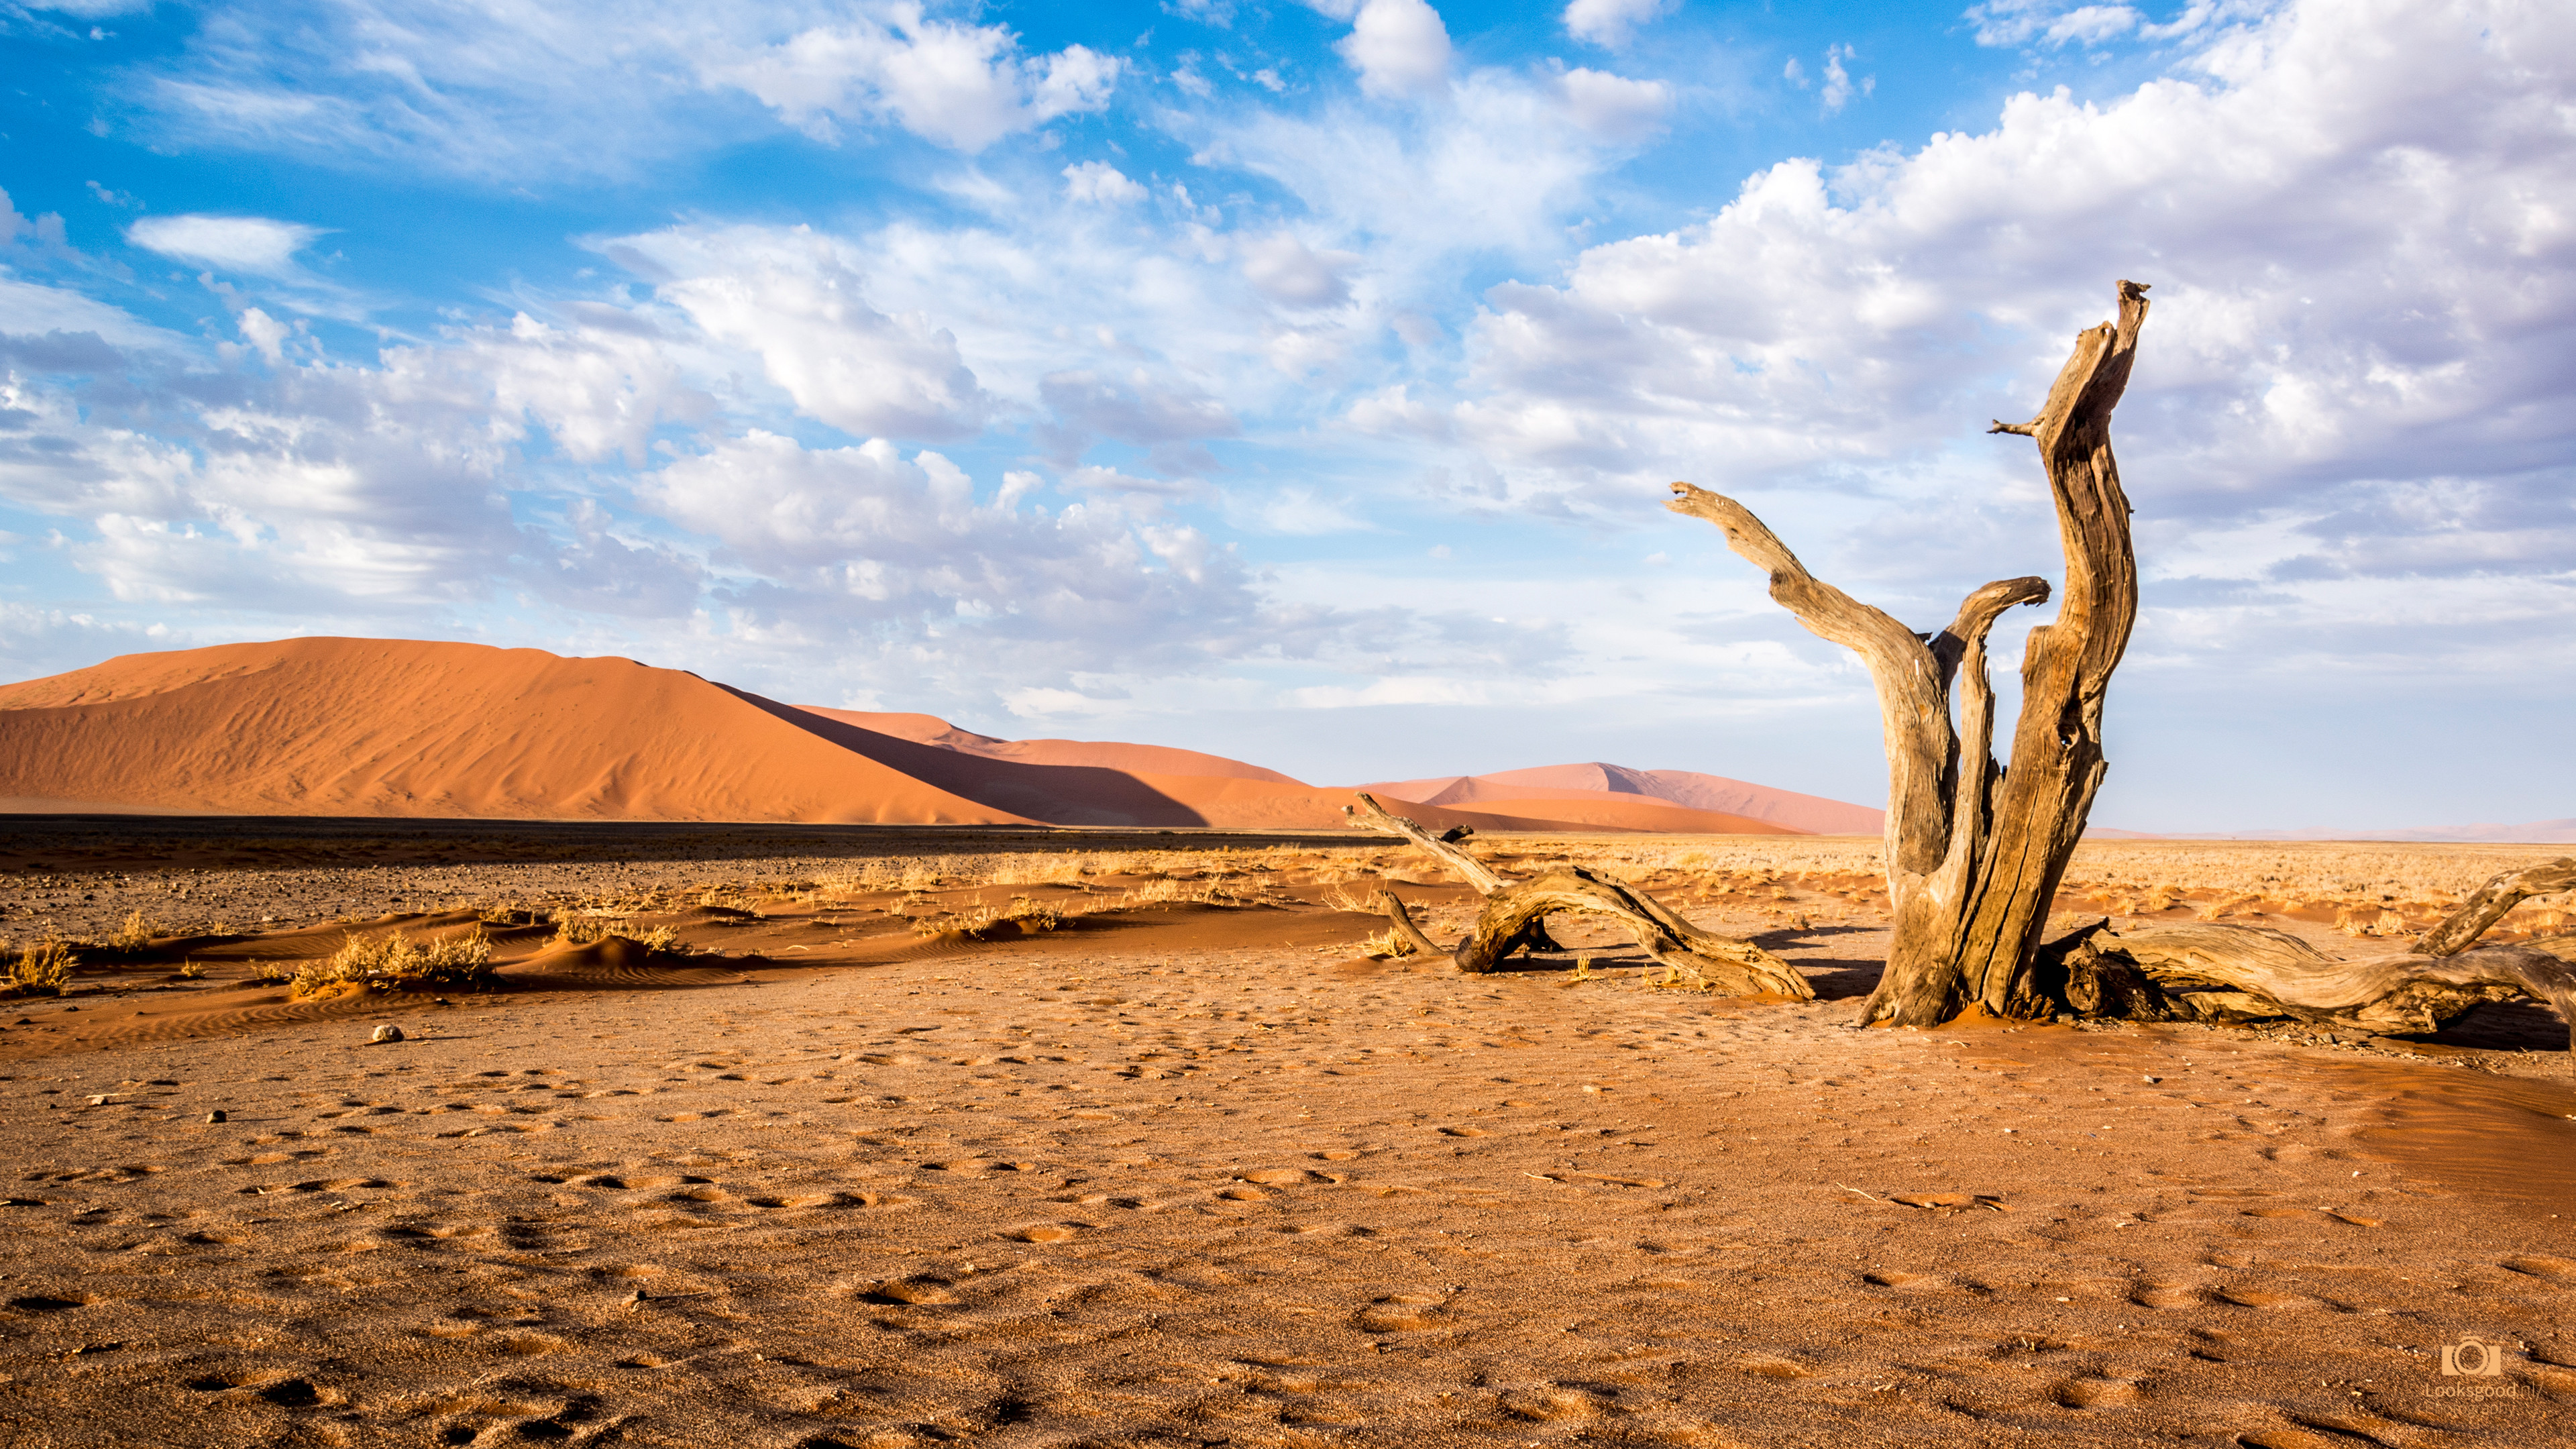 3840x2160 desert background pictures Free Wallpaper Download: Sossusvlei Namibia  Desert 4K Wallpaper / Desktop Background